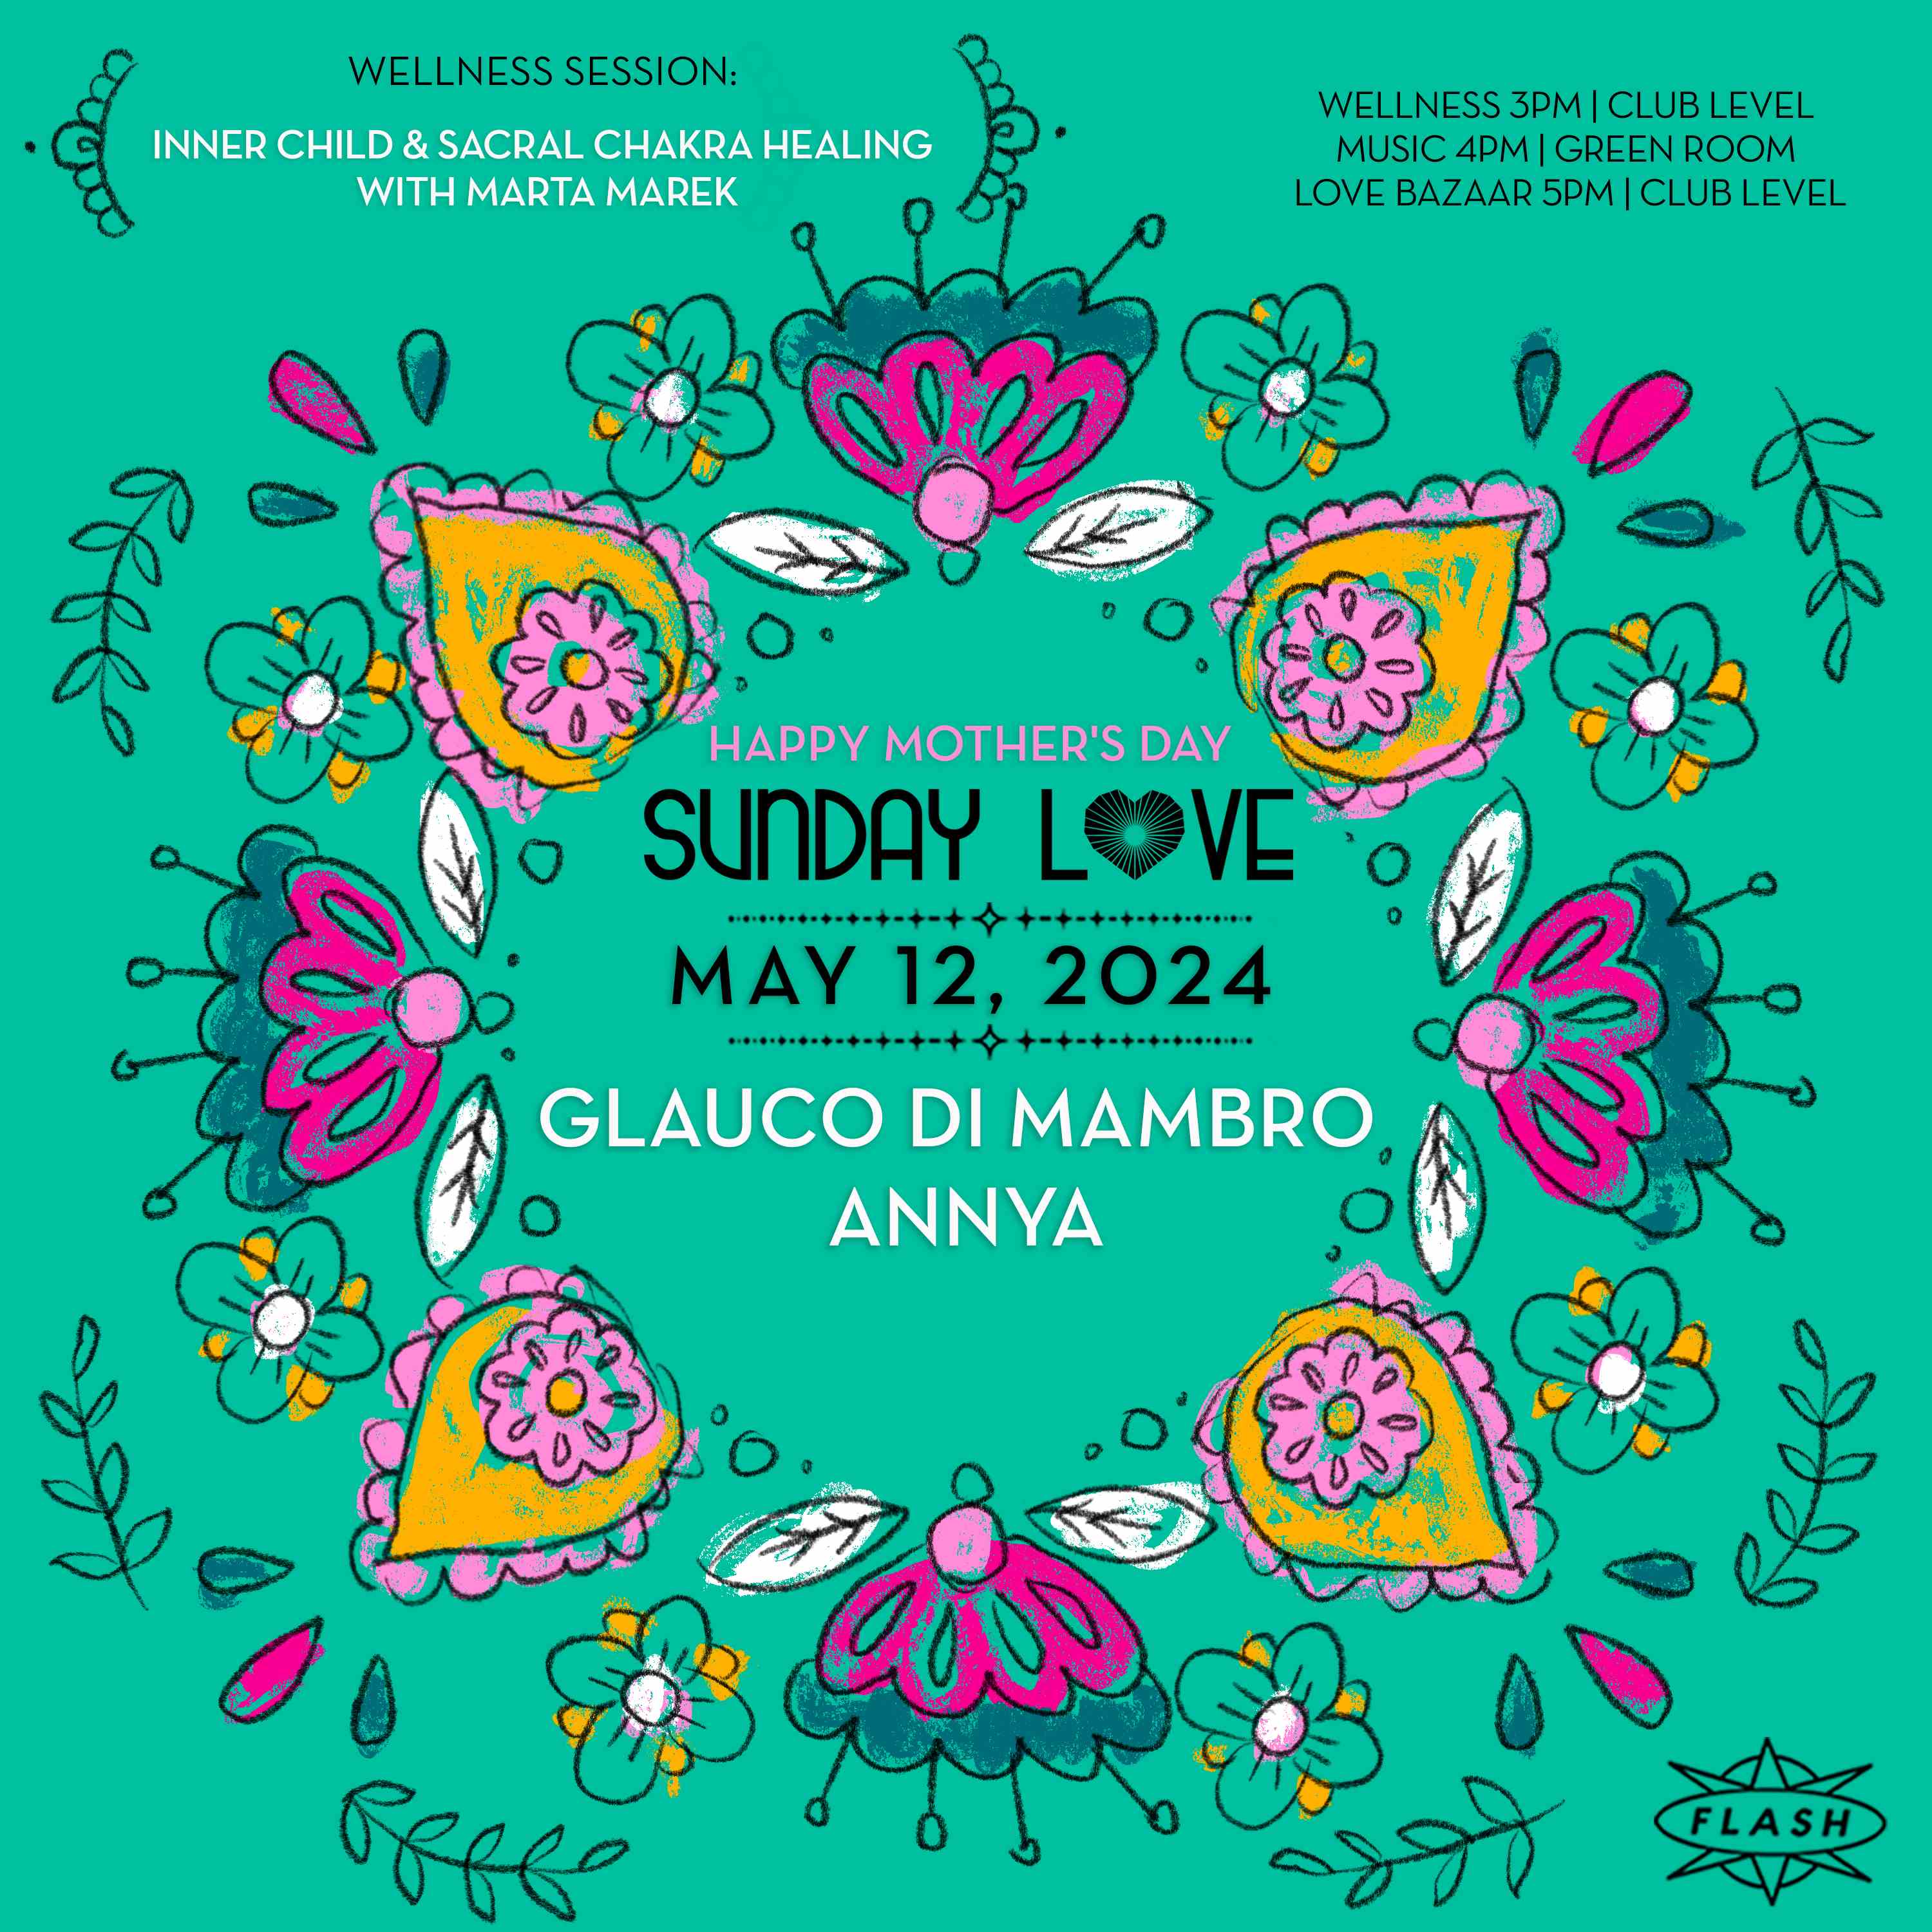 Sunday Love: Glauco Di Mambro - ANNYA event flyer